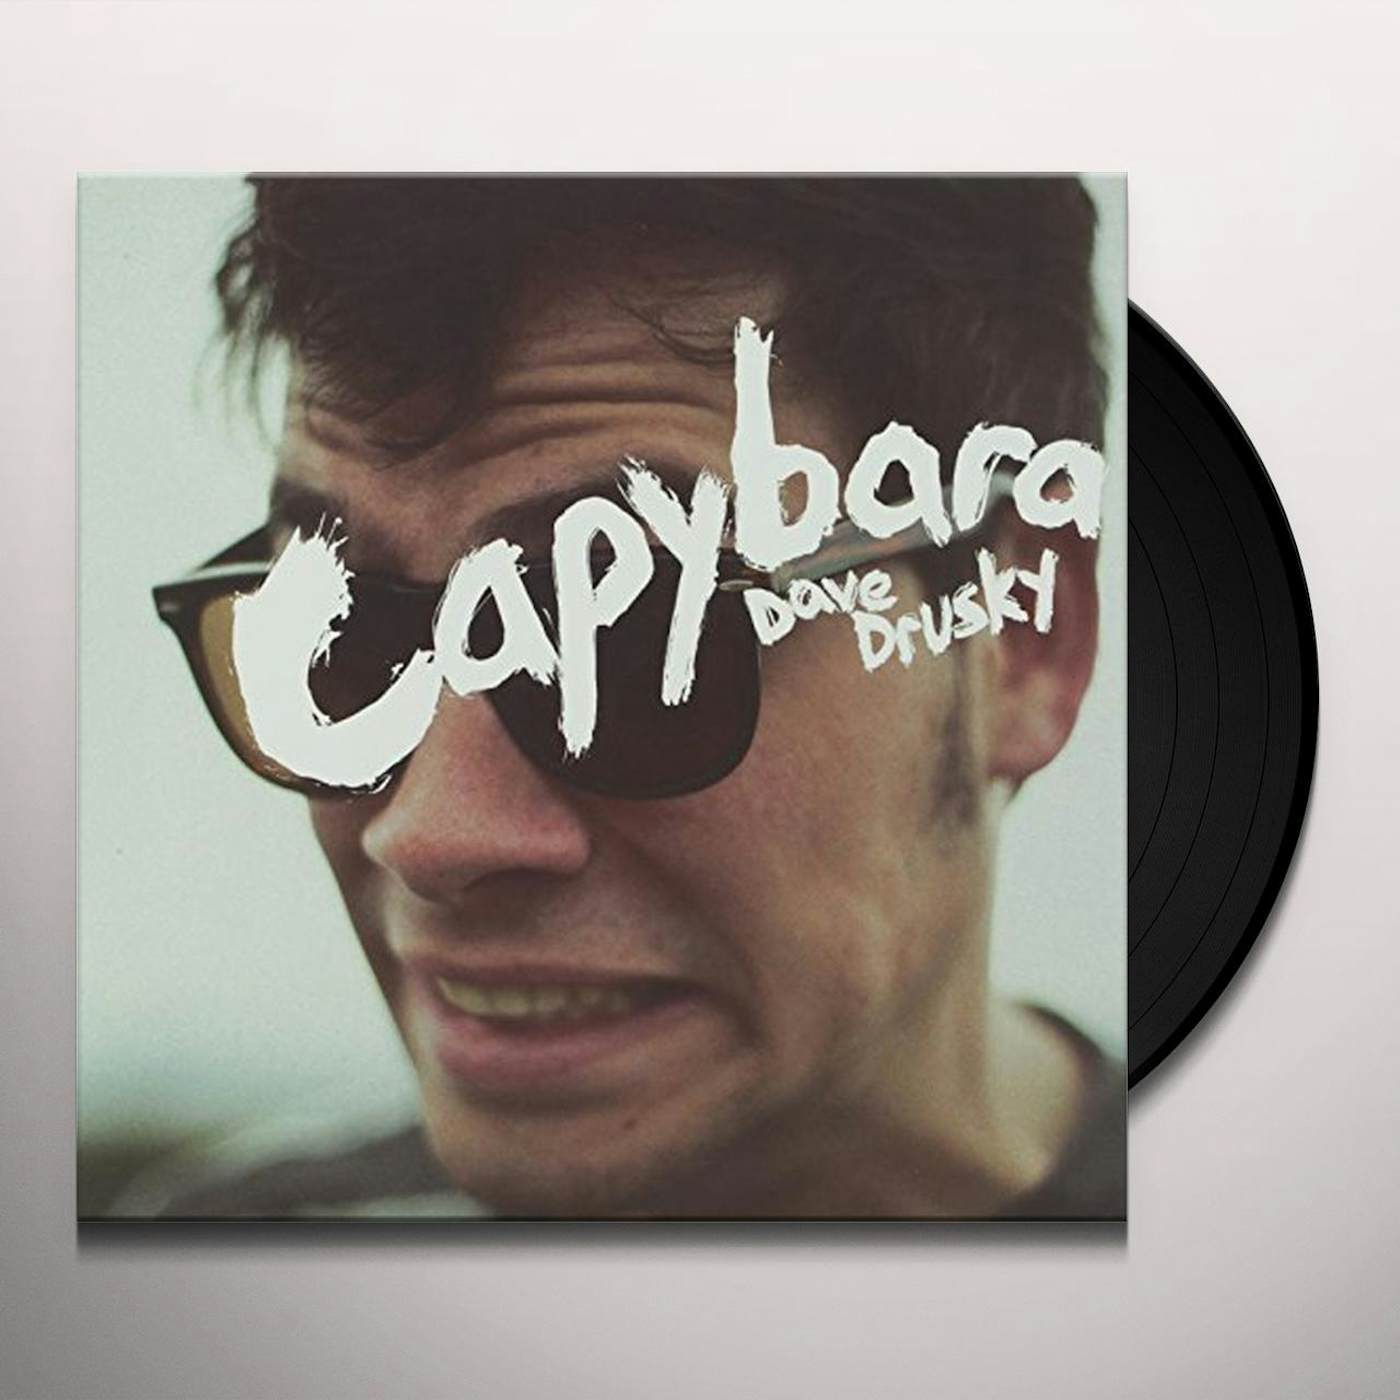 Capybara Dave Drusky Vinyl Record